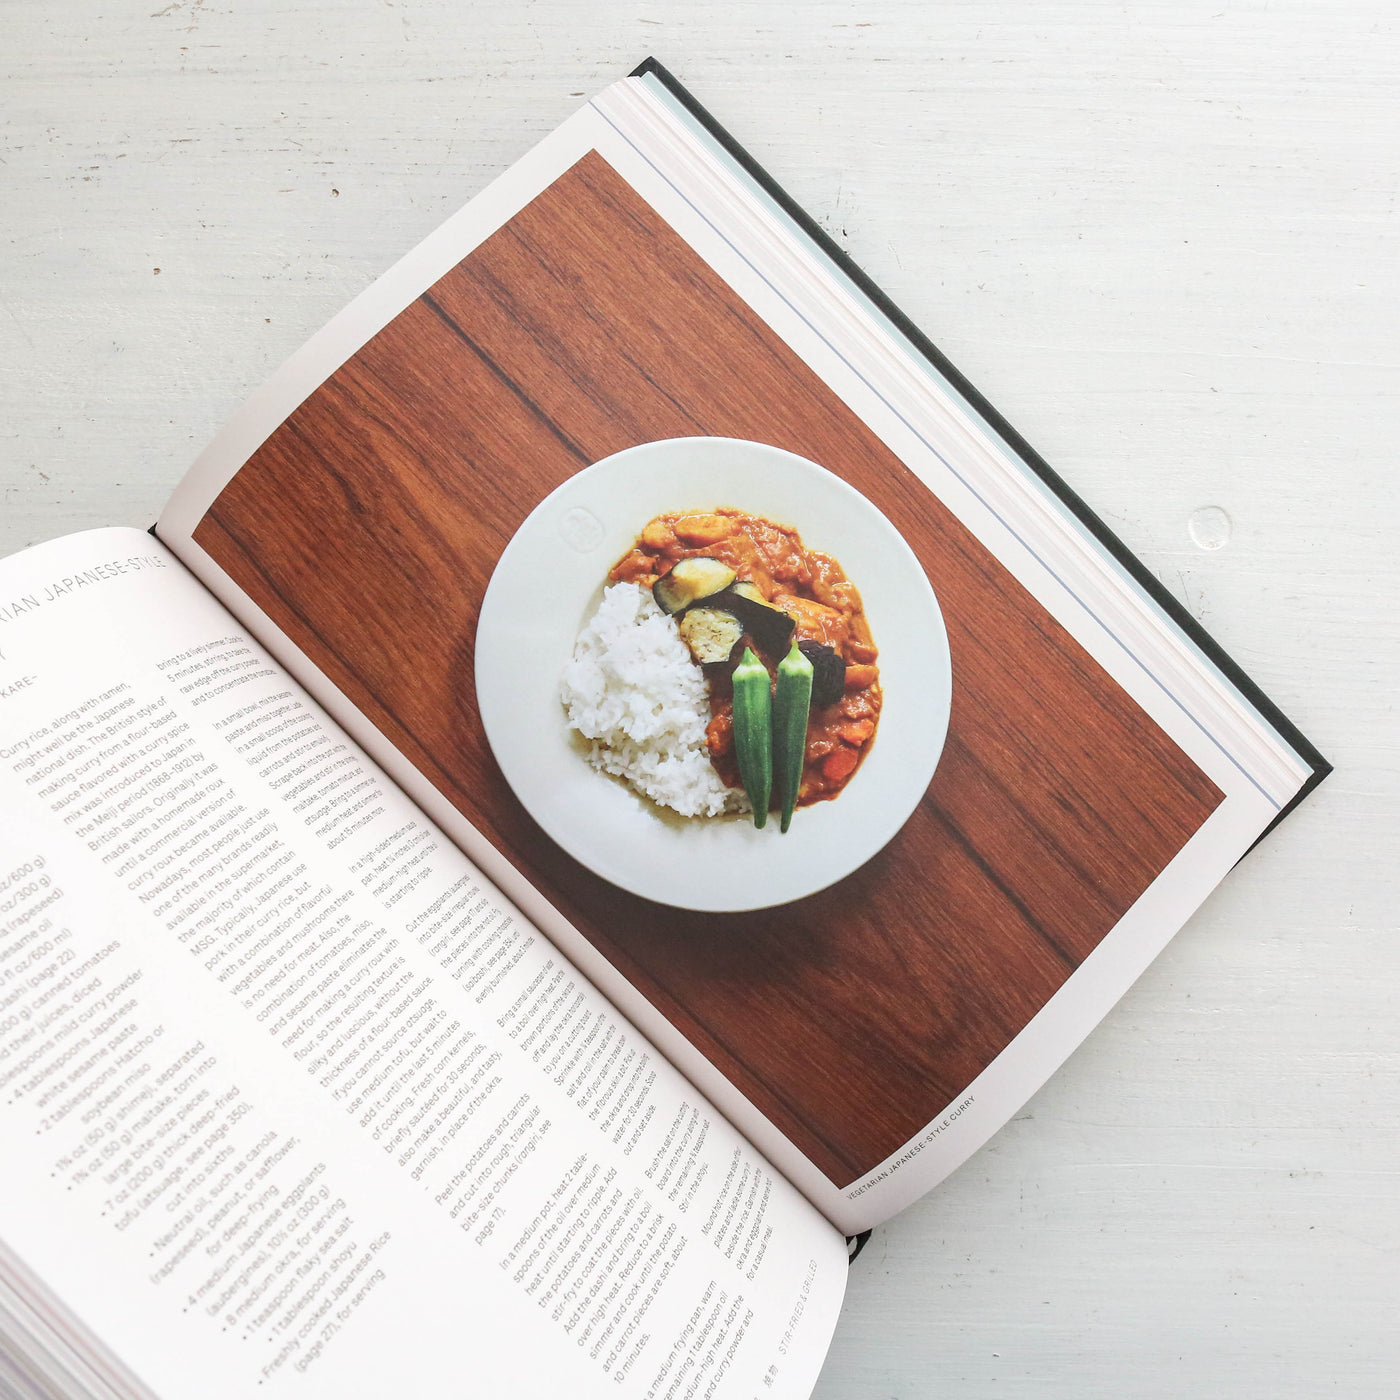 Japan - The Vegetarian Cookbook